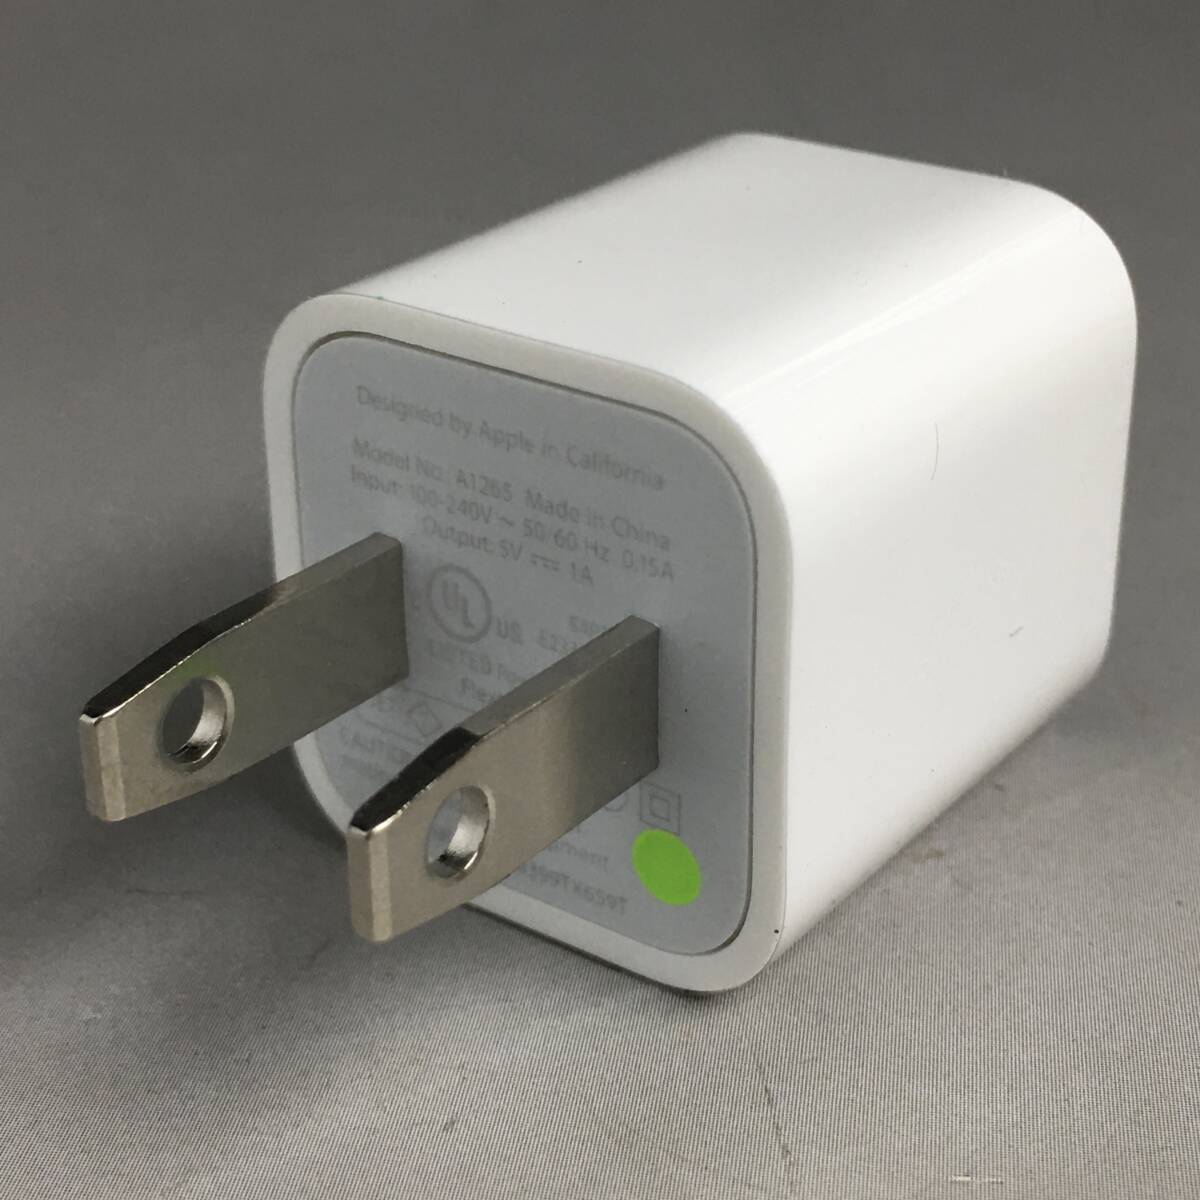 KI28/96 未使用 Apple USB 電源 アダプタ まとめて15点 A1265 ACアダプター 充電器 USB電源 アップル 純正 iPhone iPod 付属品 ④の画像2